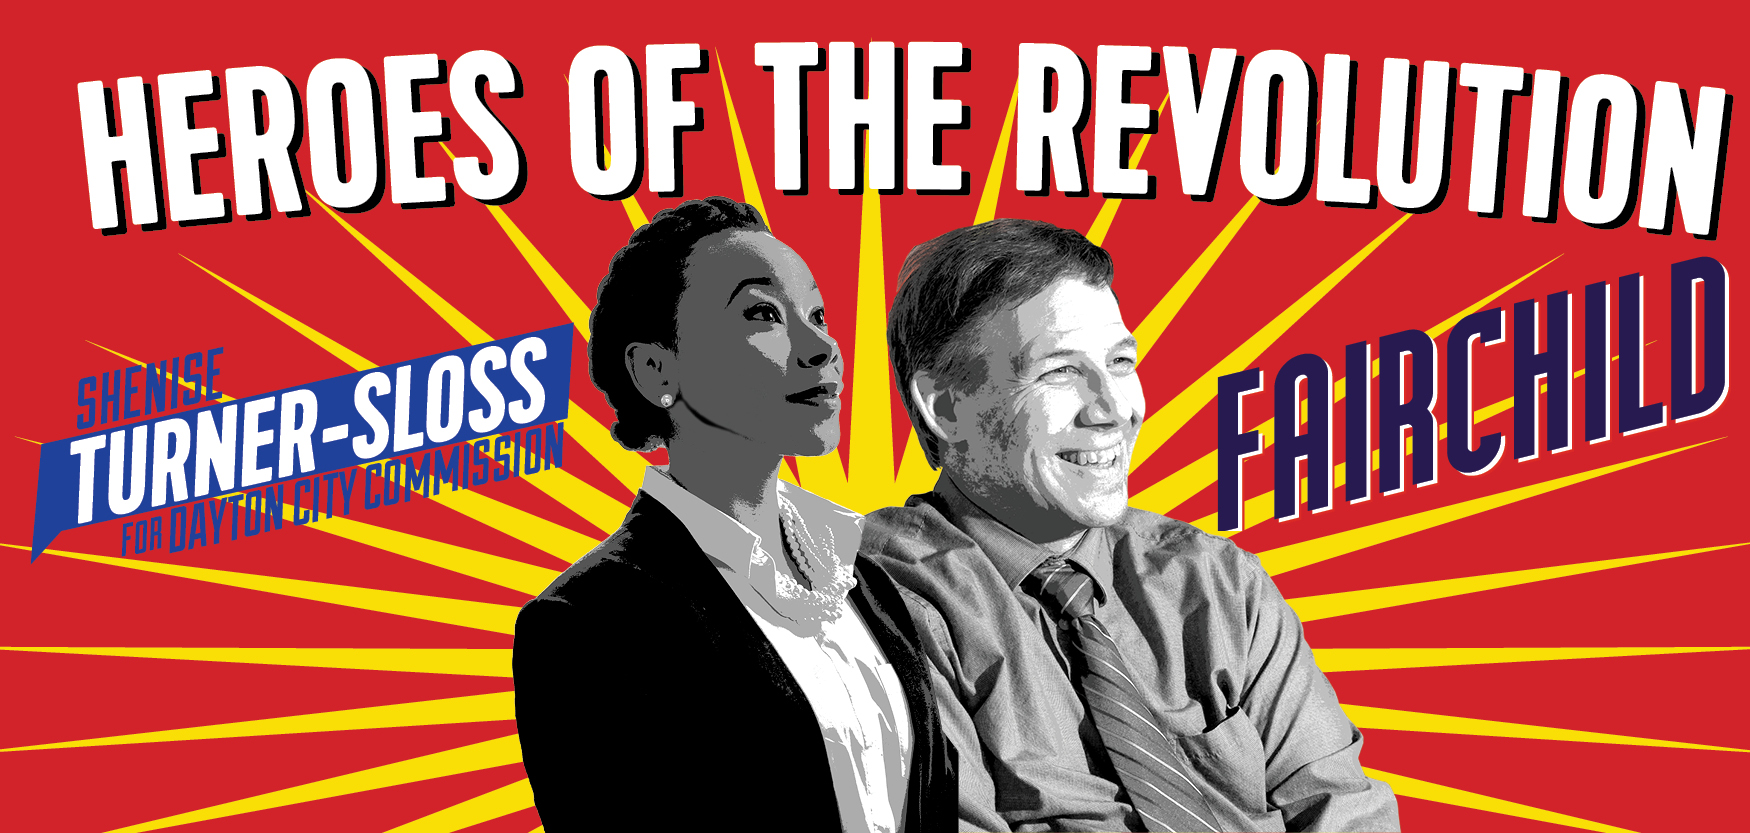 Shenise Turner-Sloss and Darryl Fairchild - Heroes of the Revolution